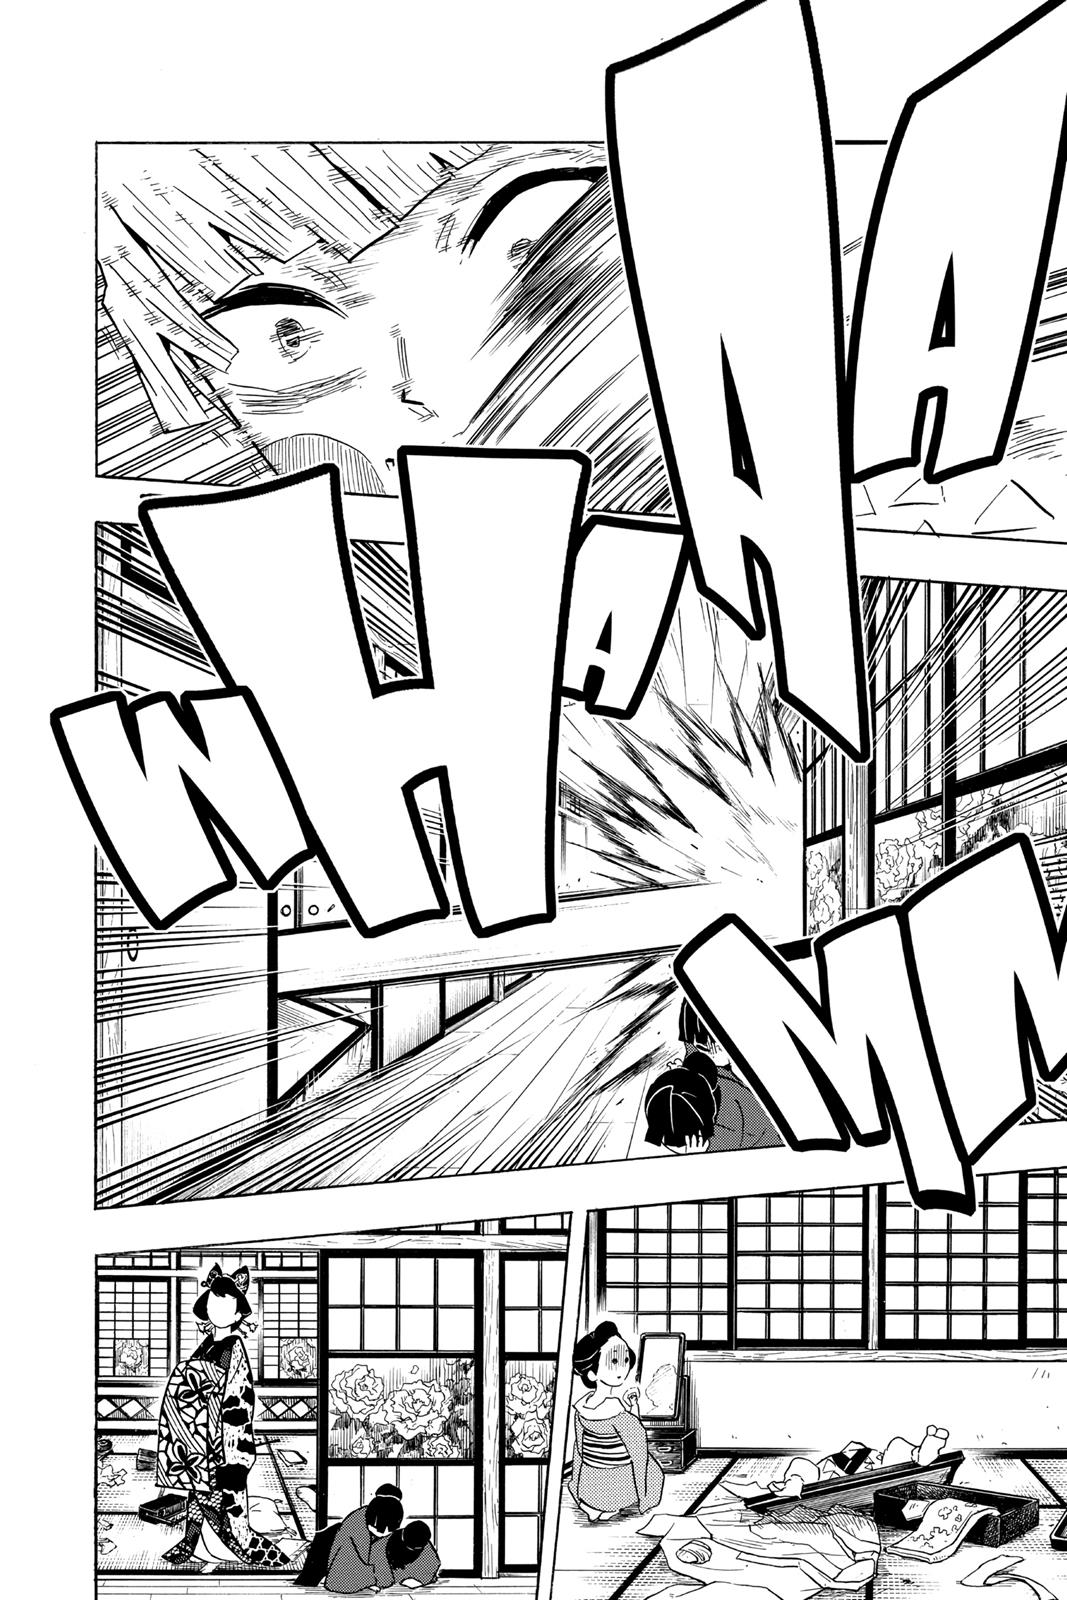 Demon Slayer Manga Manga Chapter - 74 - image 12